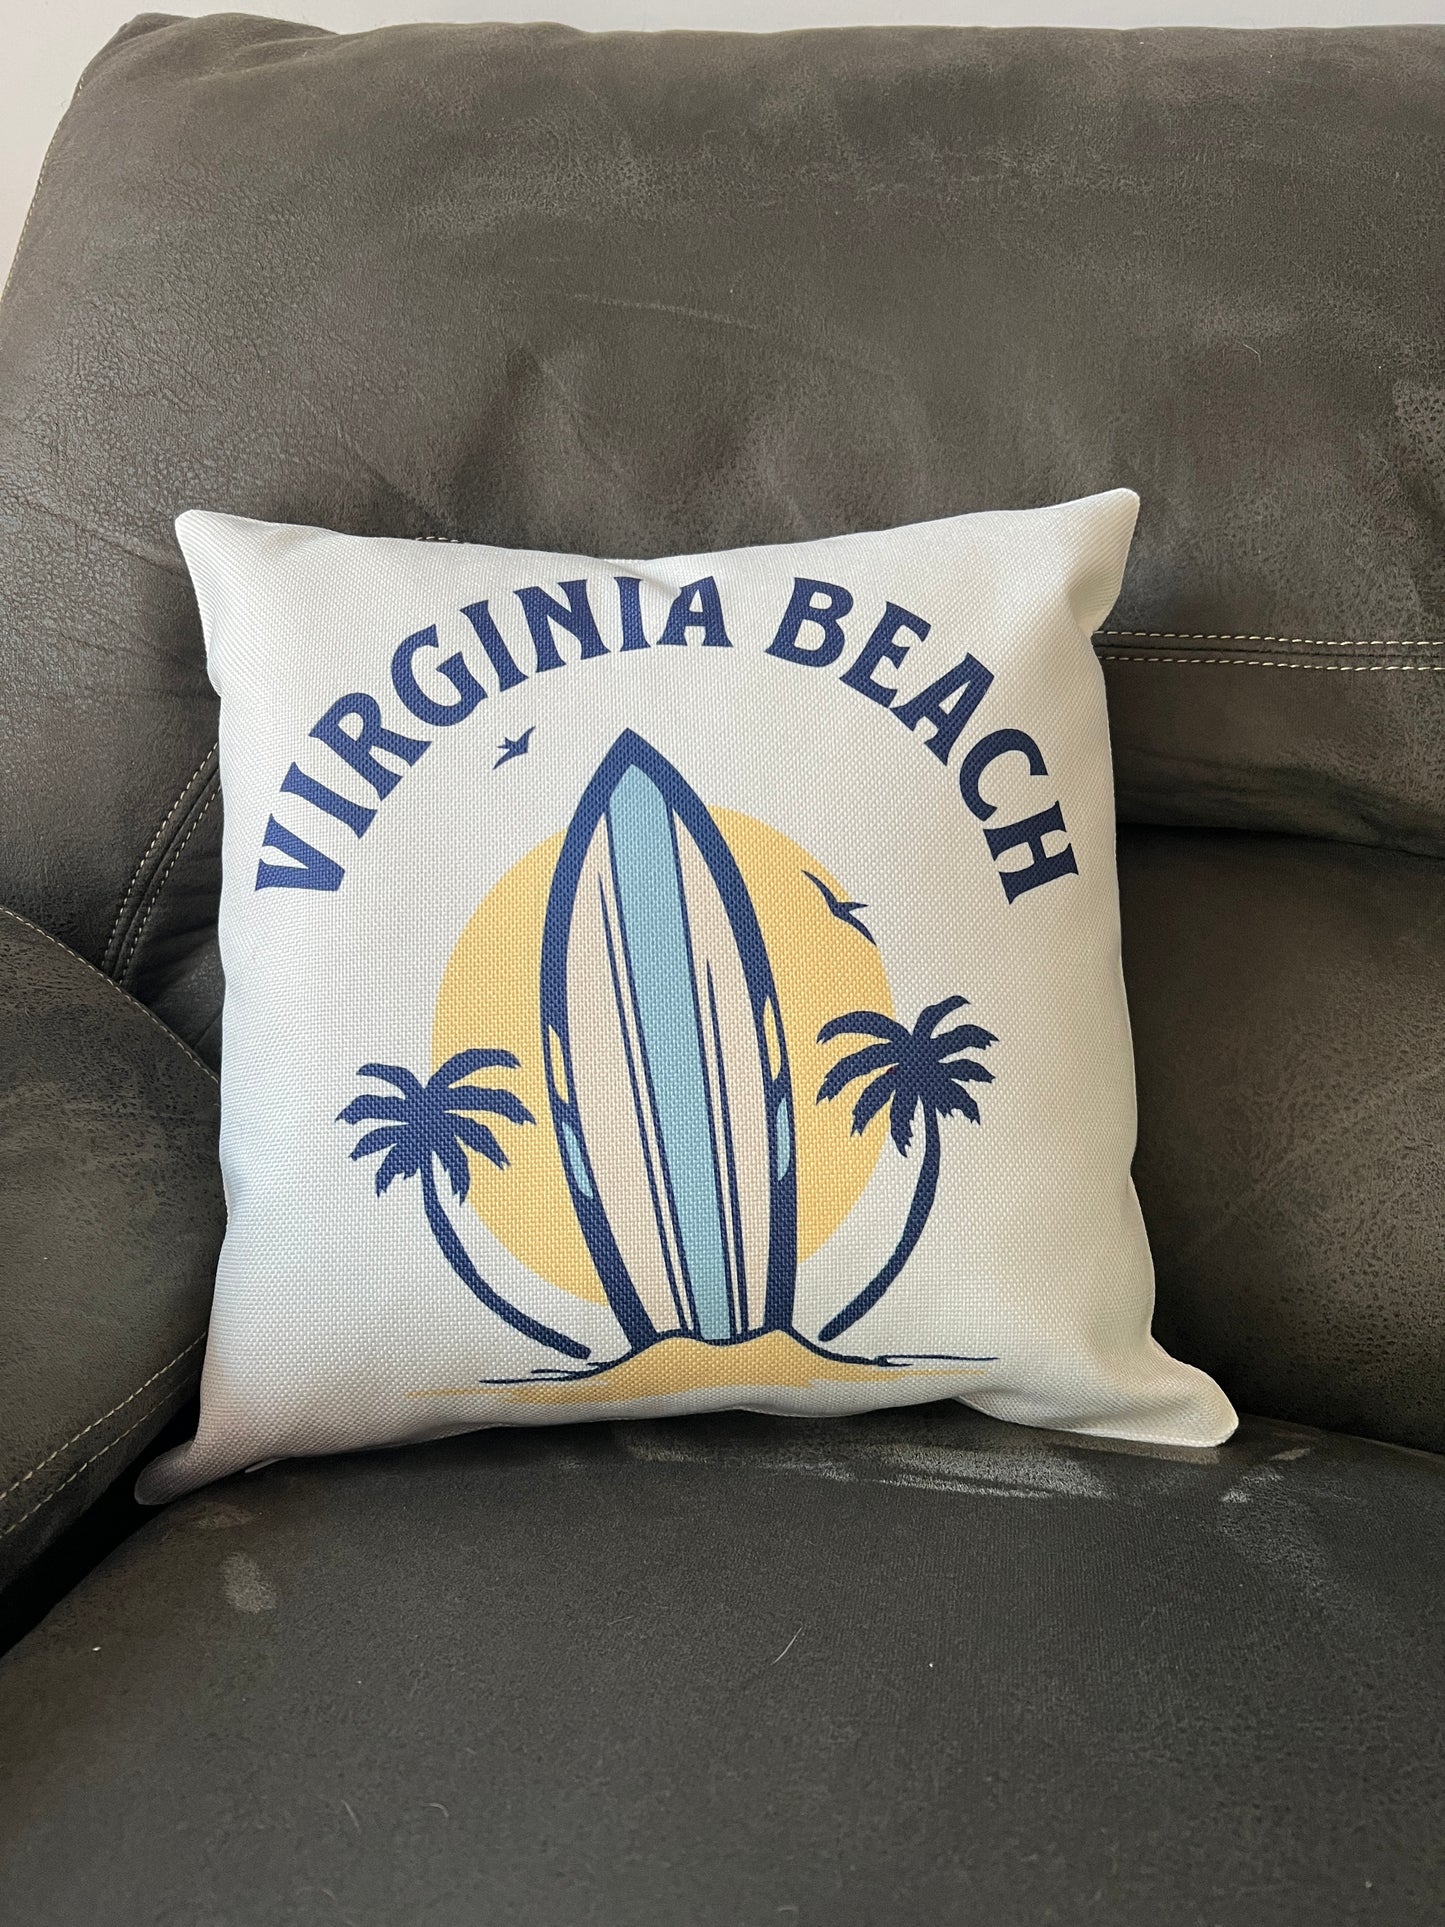 Virginia Beach Pillow